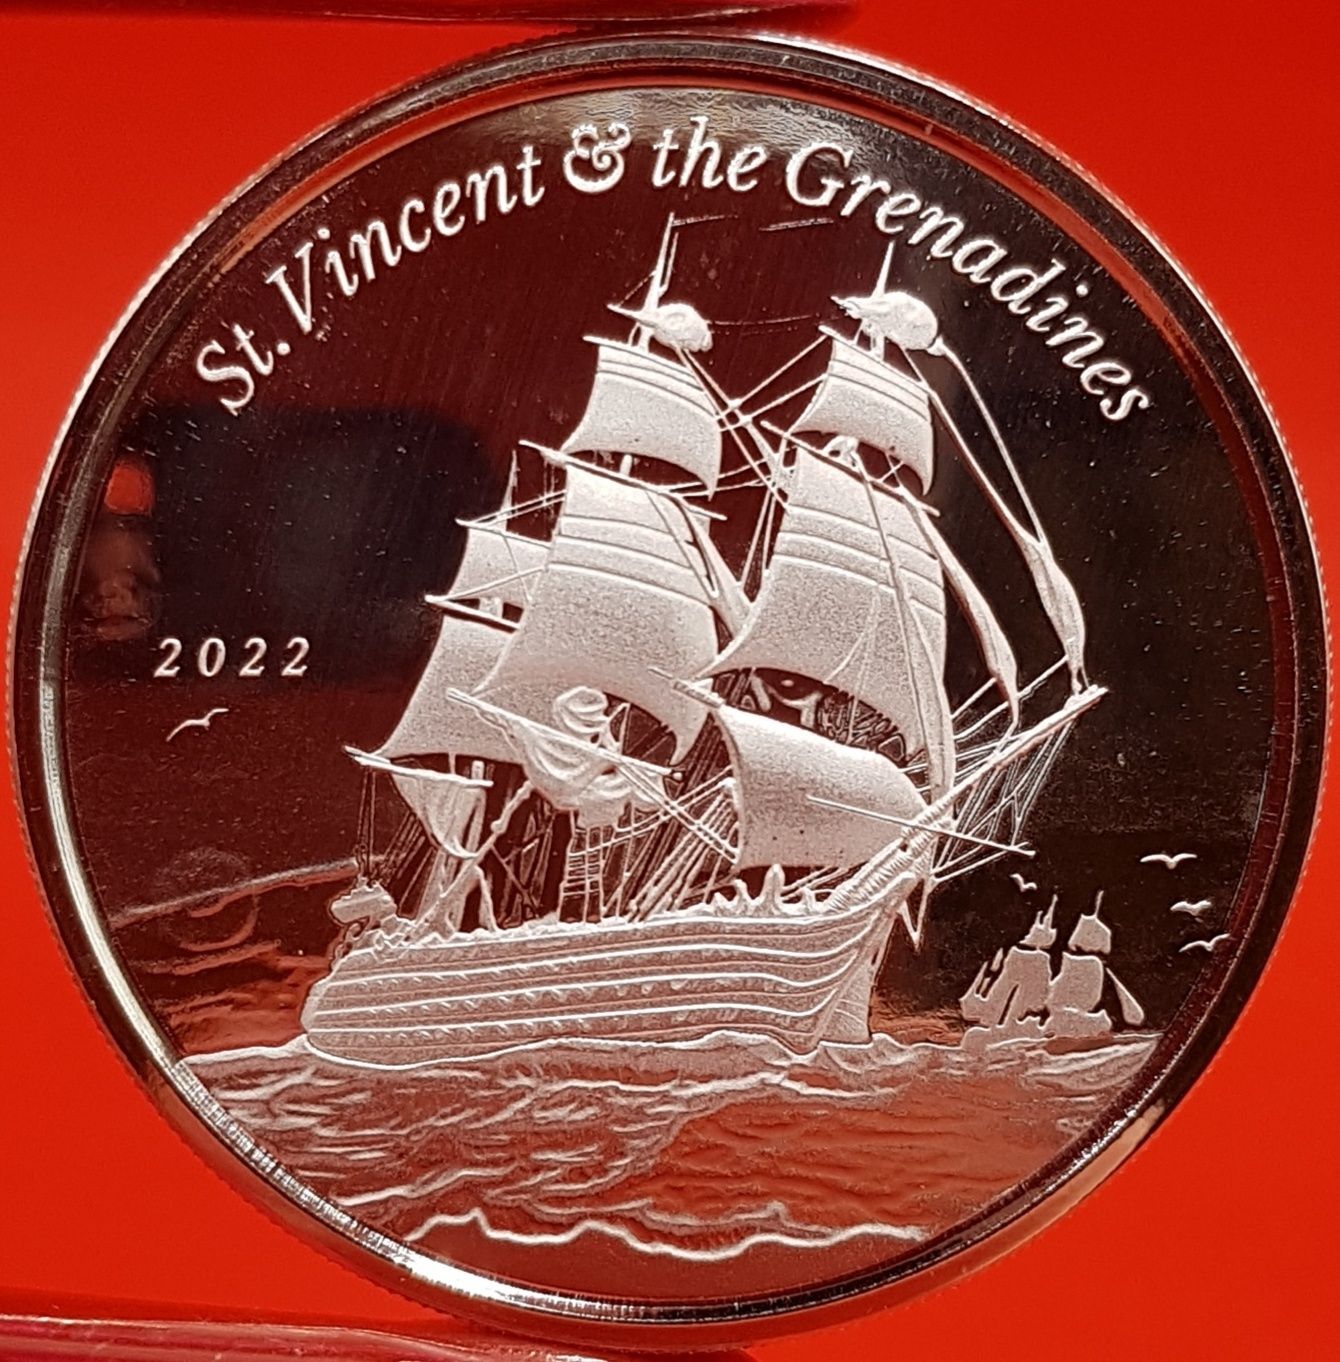 SUA Scottsdale Mint EC8 2022 TOATA monede argint lingou 999 pur